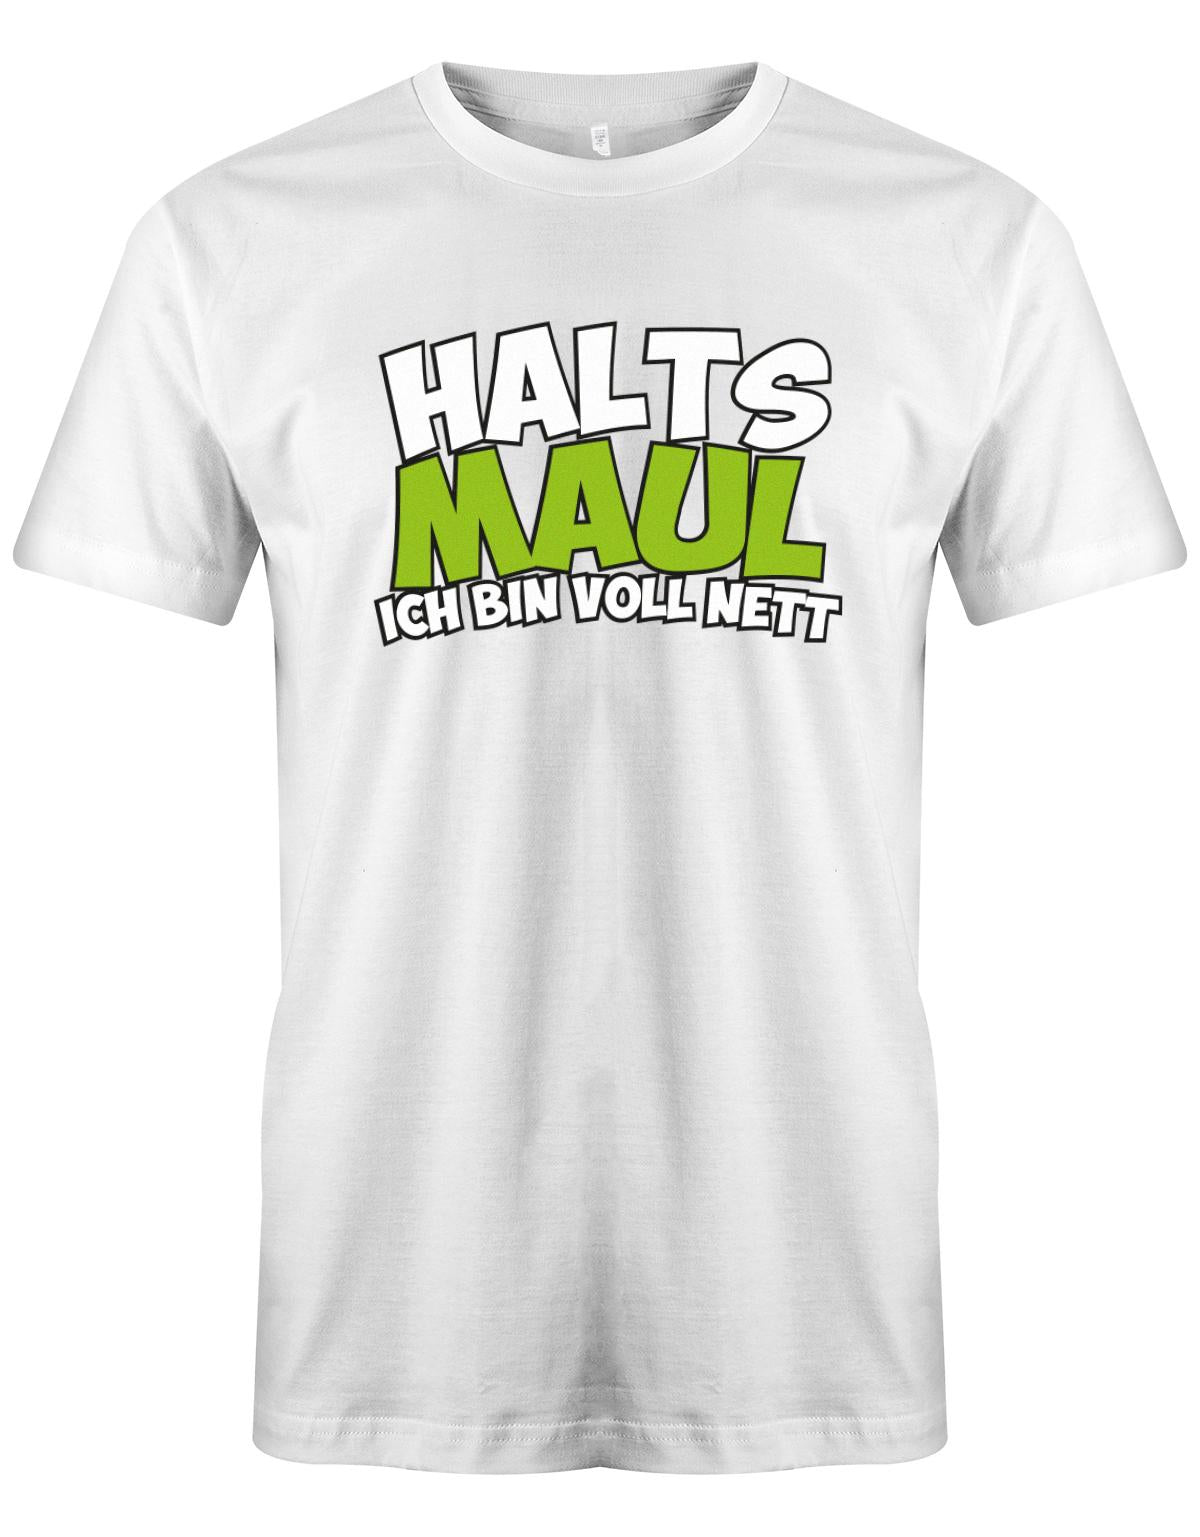 Halts-Maul-ich-bin-voll-nett-Herren-Shirt-Weisss